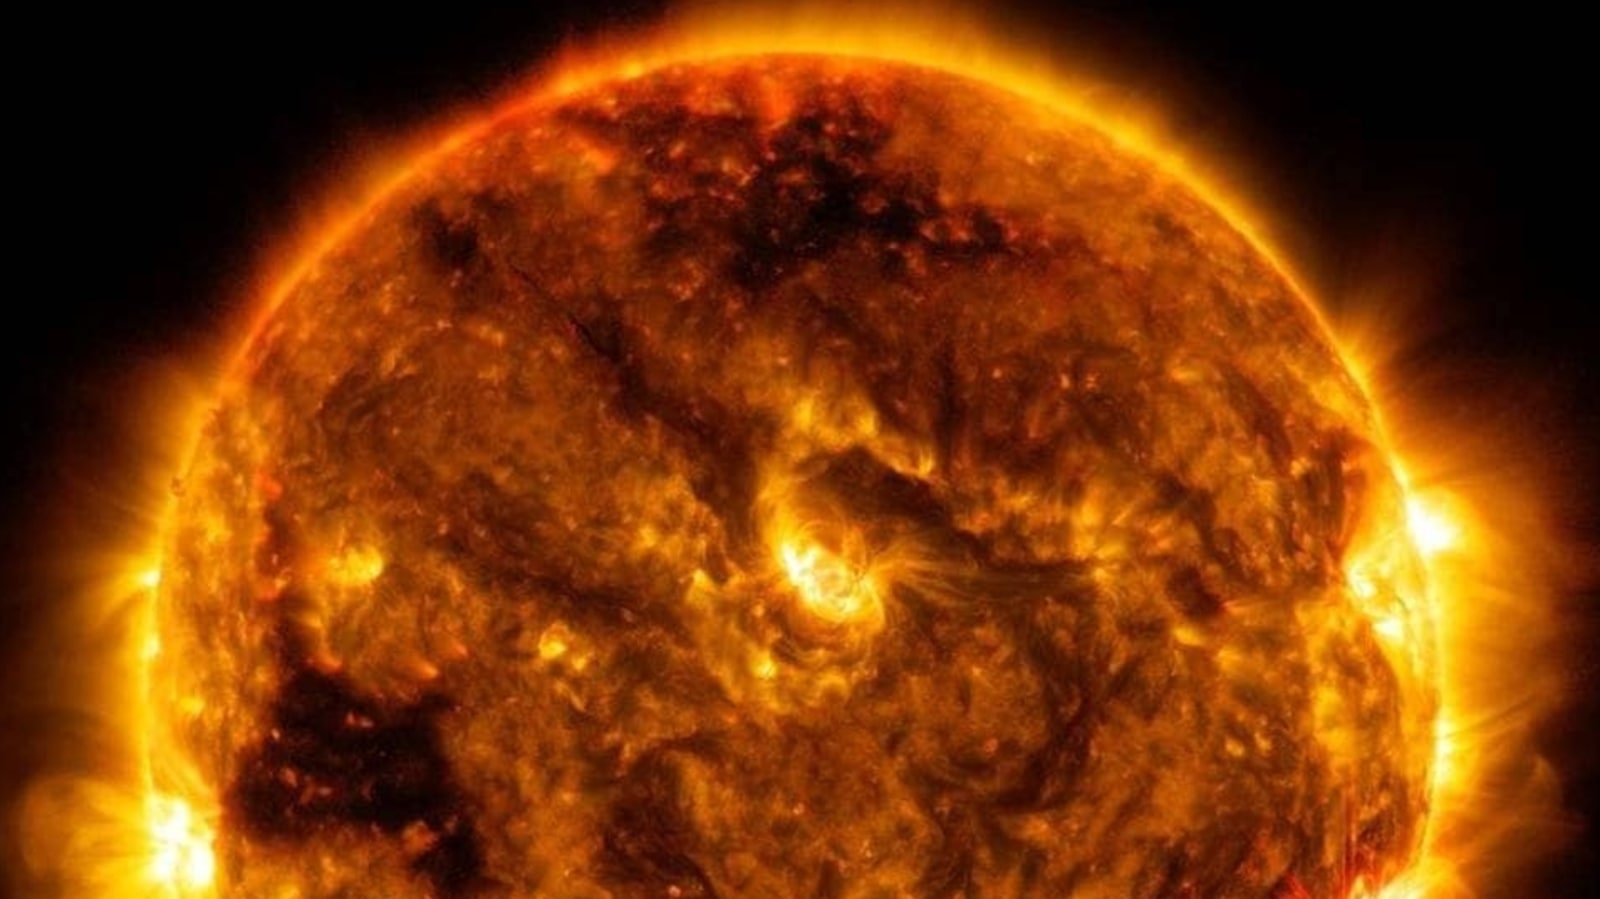 Фото солнца из космоса в высоком качестве в натуральном цвете